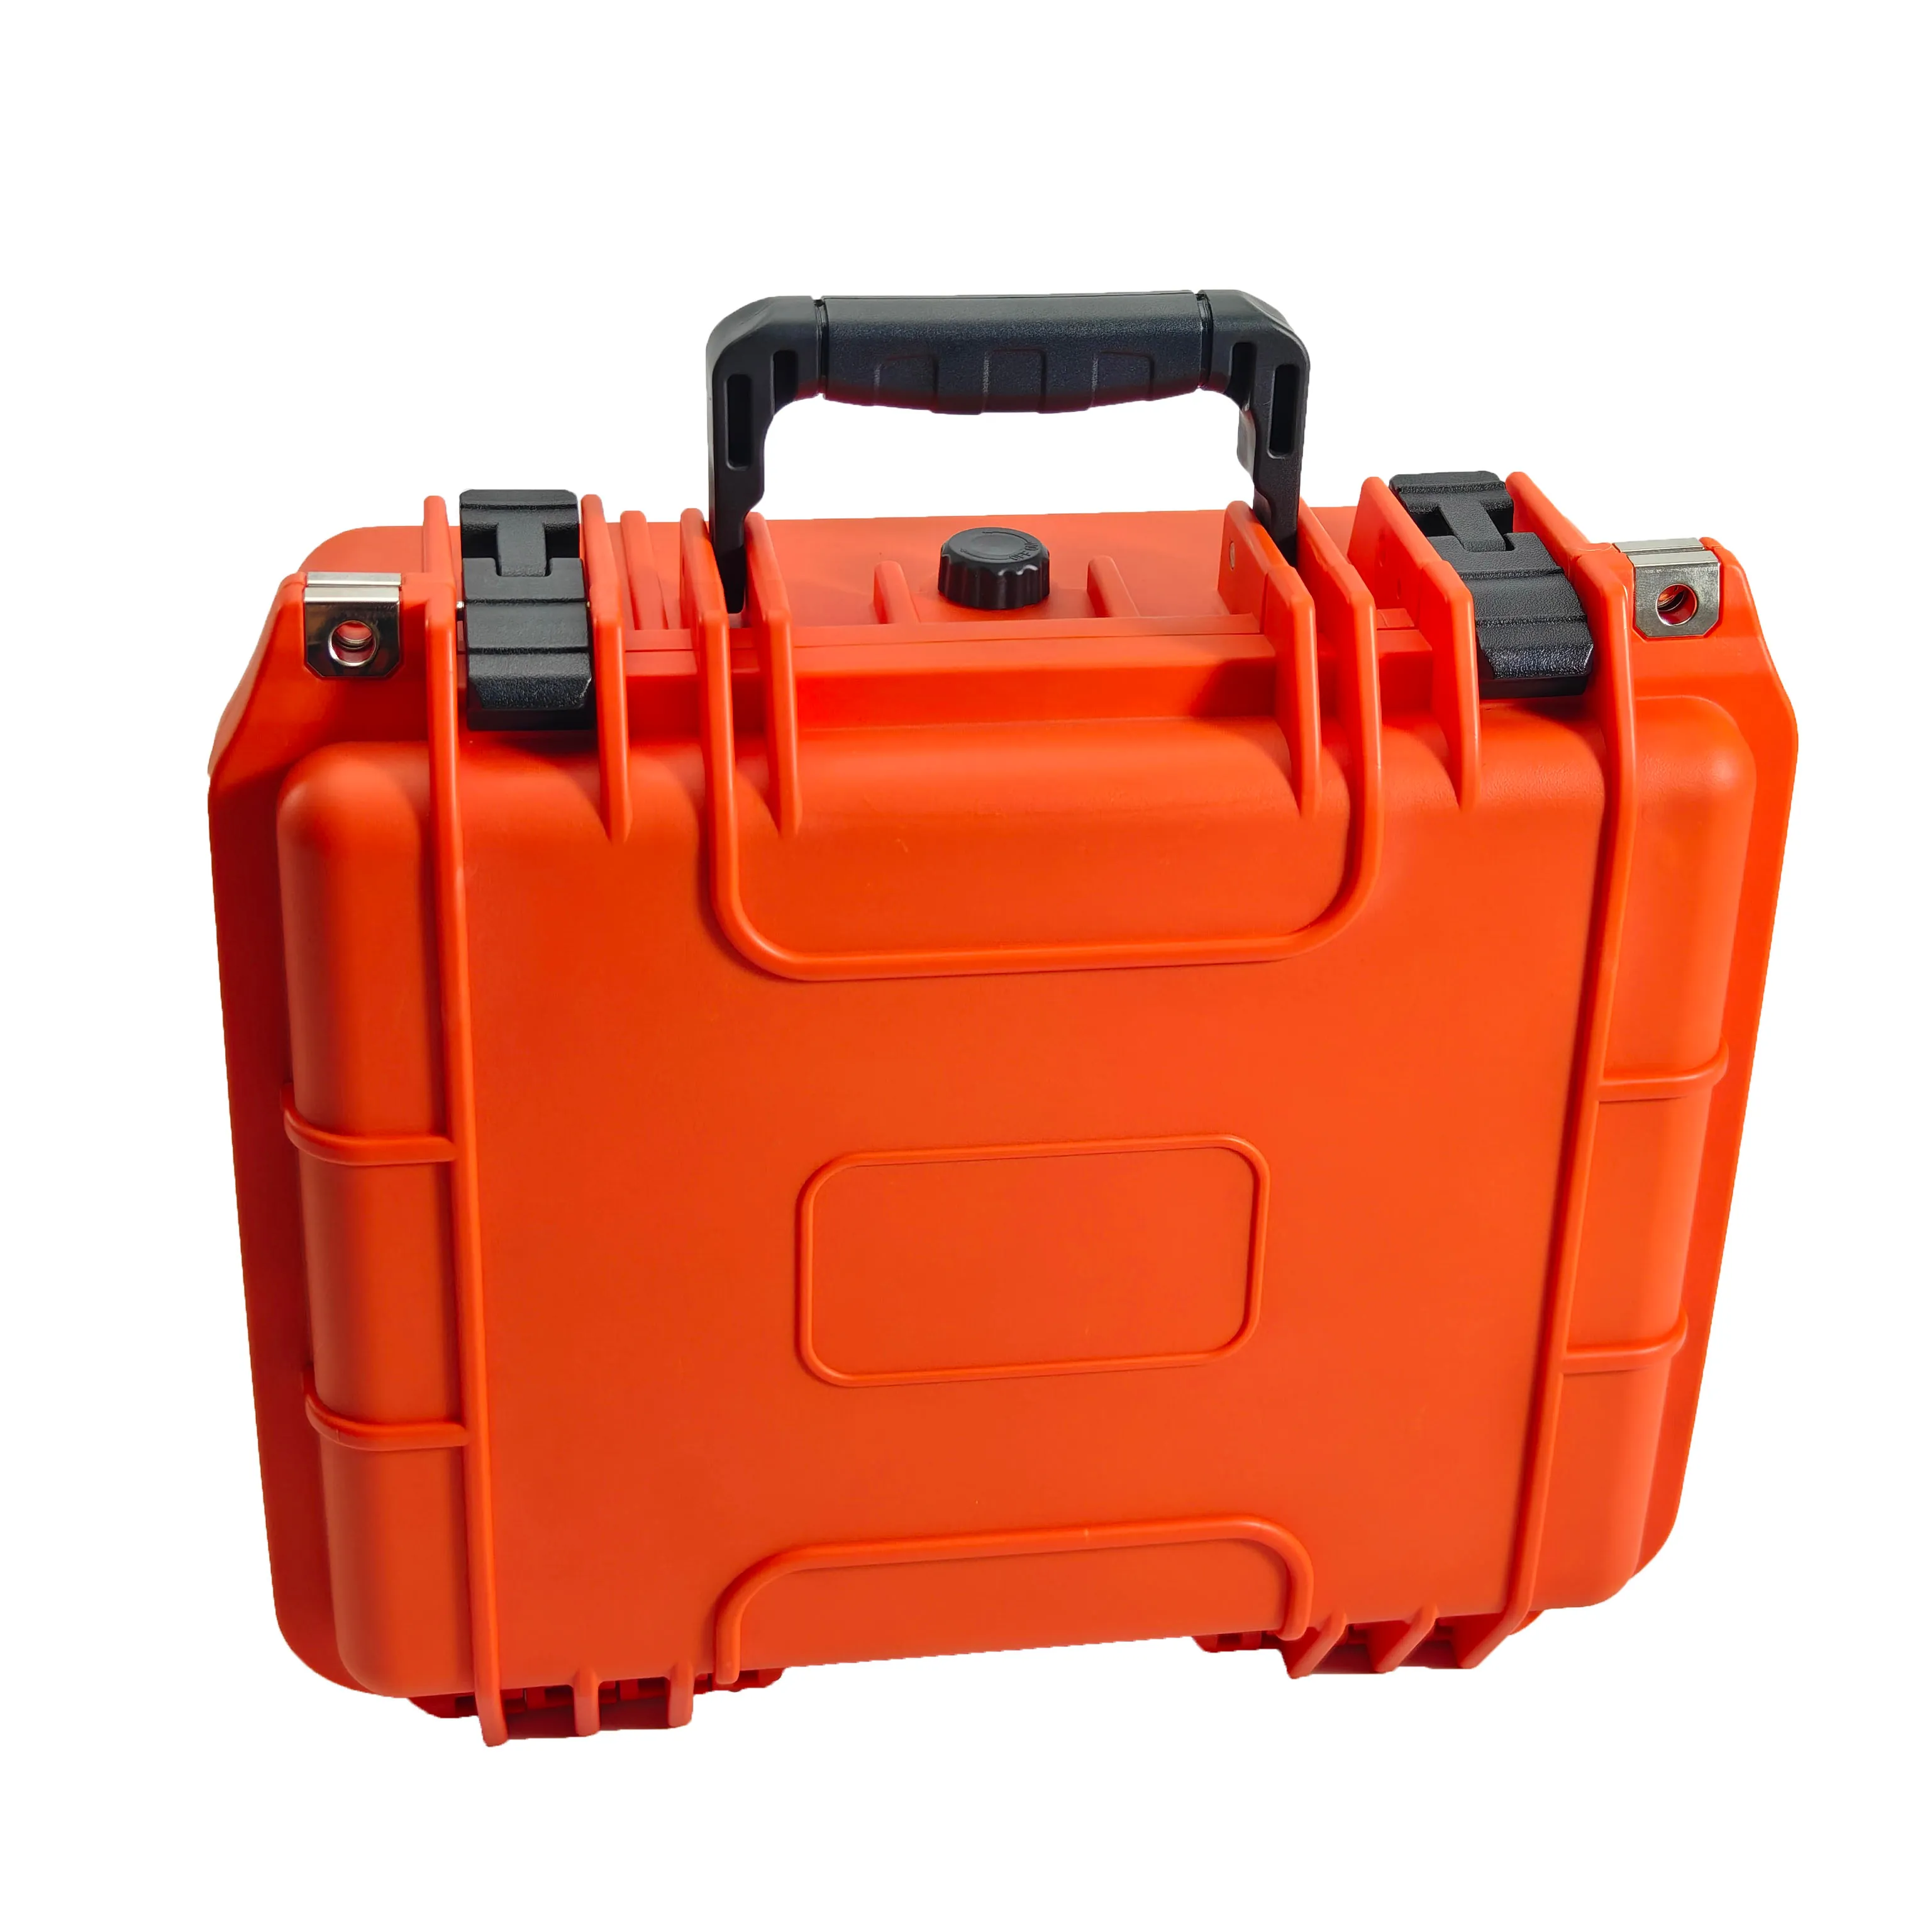 Orange Farbe IP67 wasserdicht Staub dicht Stoß fester Werkzeug kasten tragbarer Hartplastik koffer